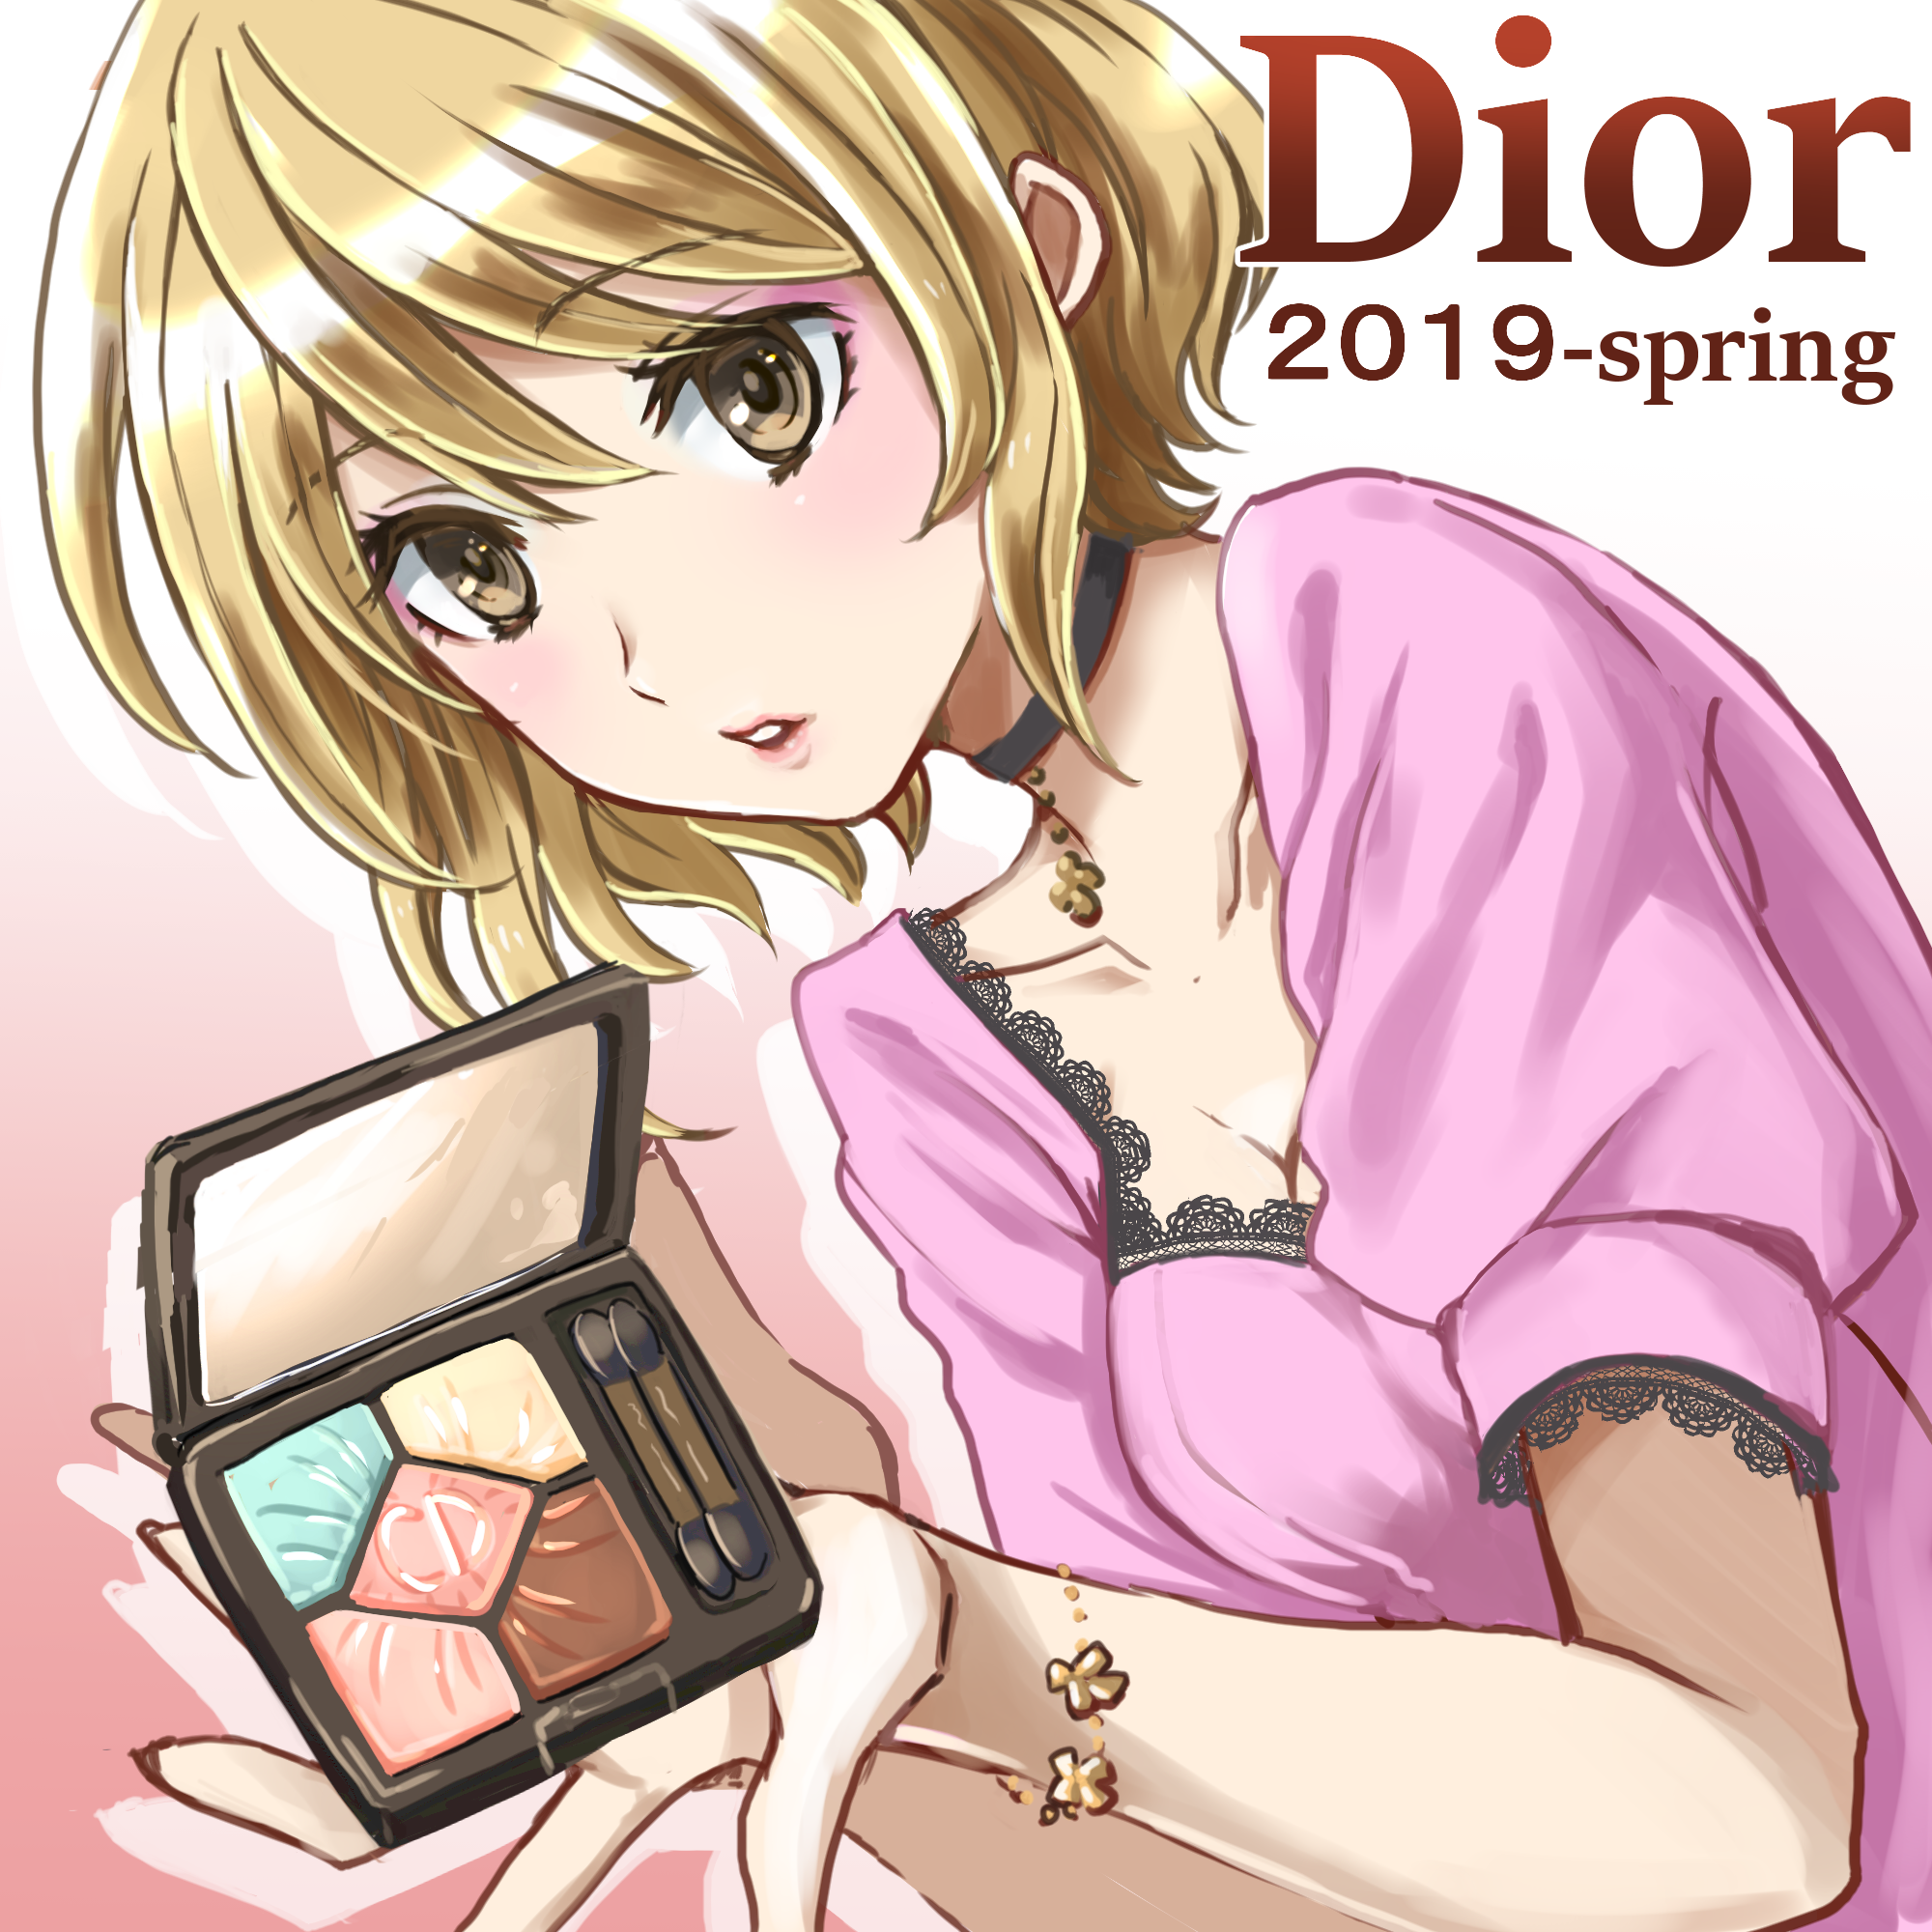 【コスメ】Dior春コスメ〜2019〜